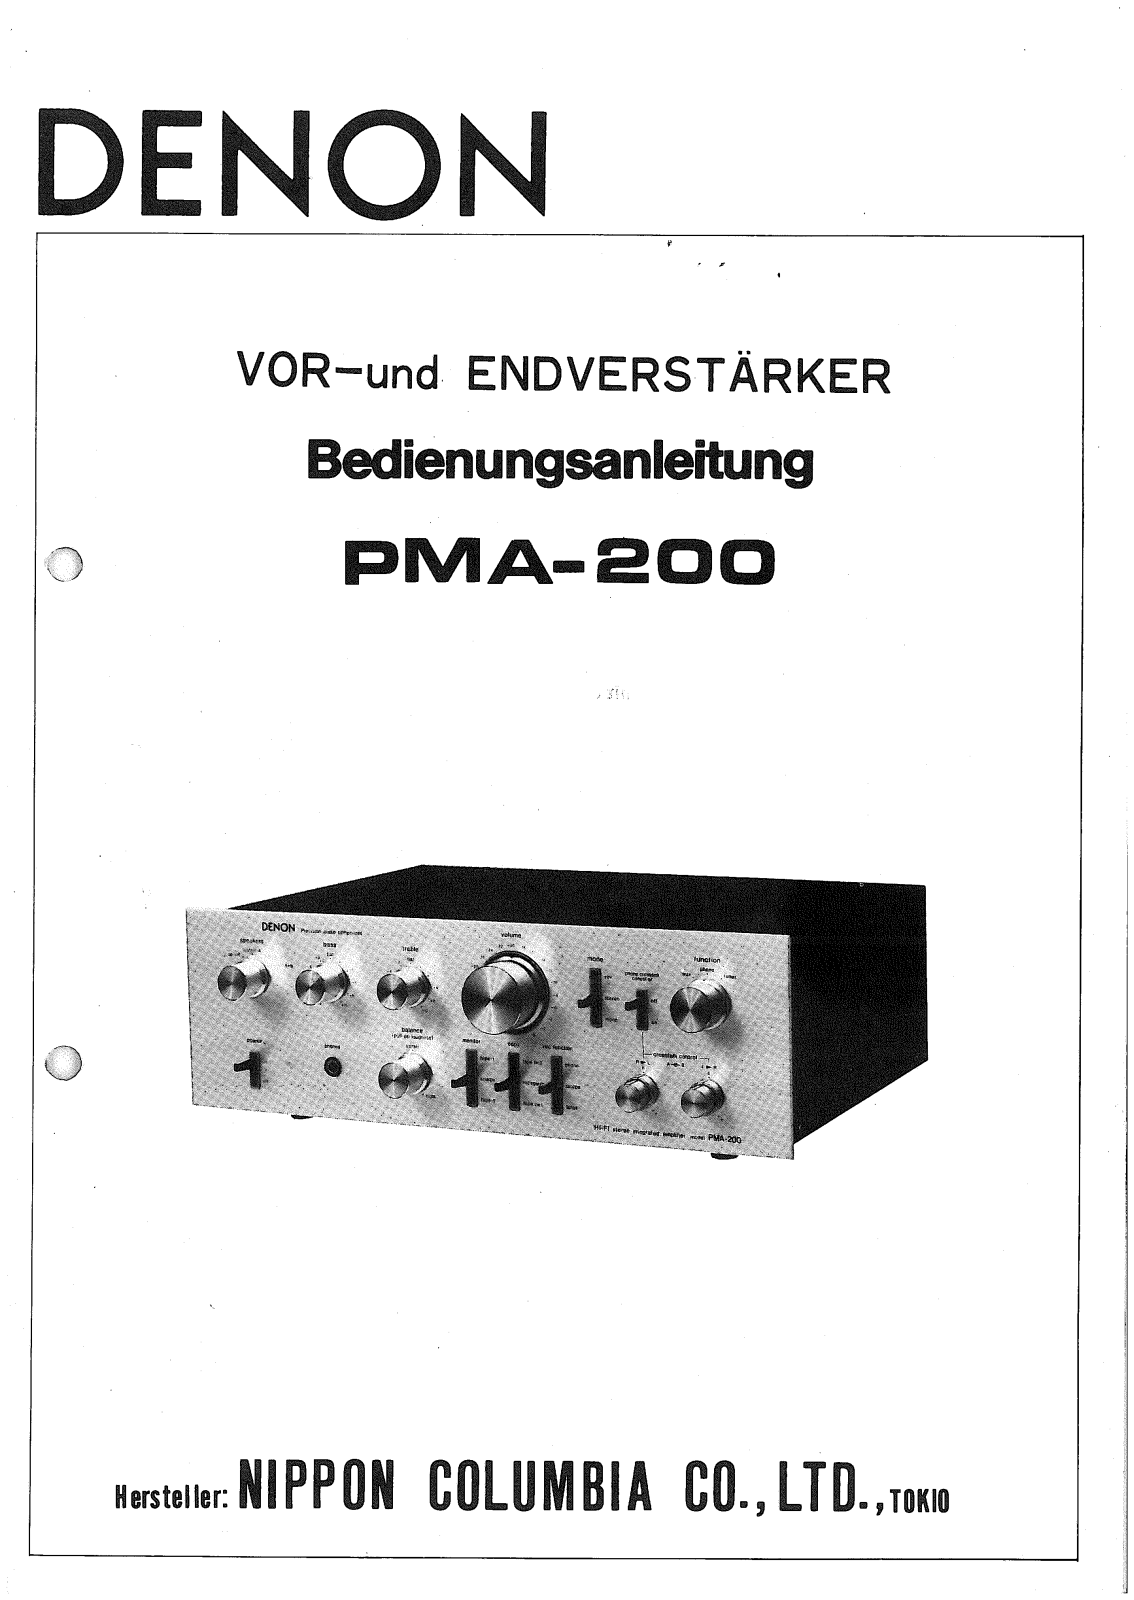 Denon PMA-200 Owner's Manual